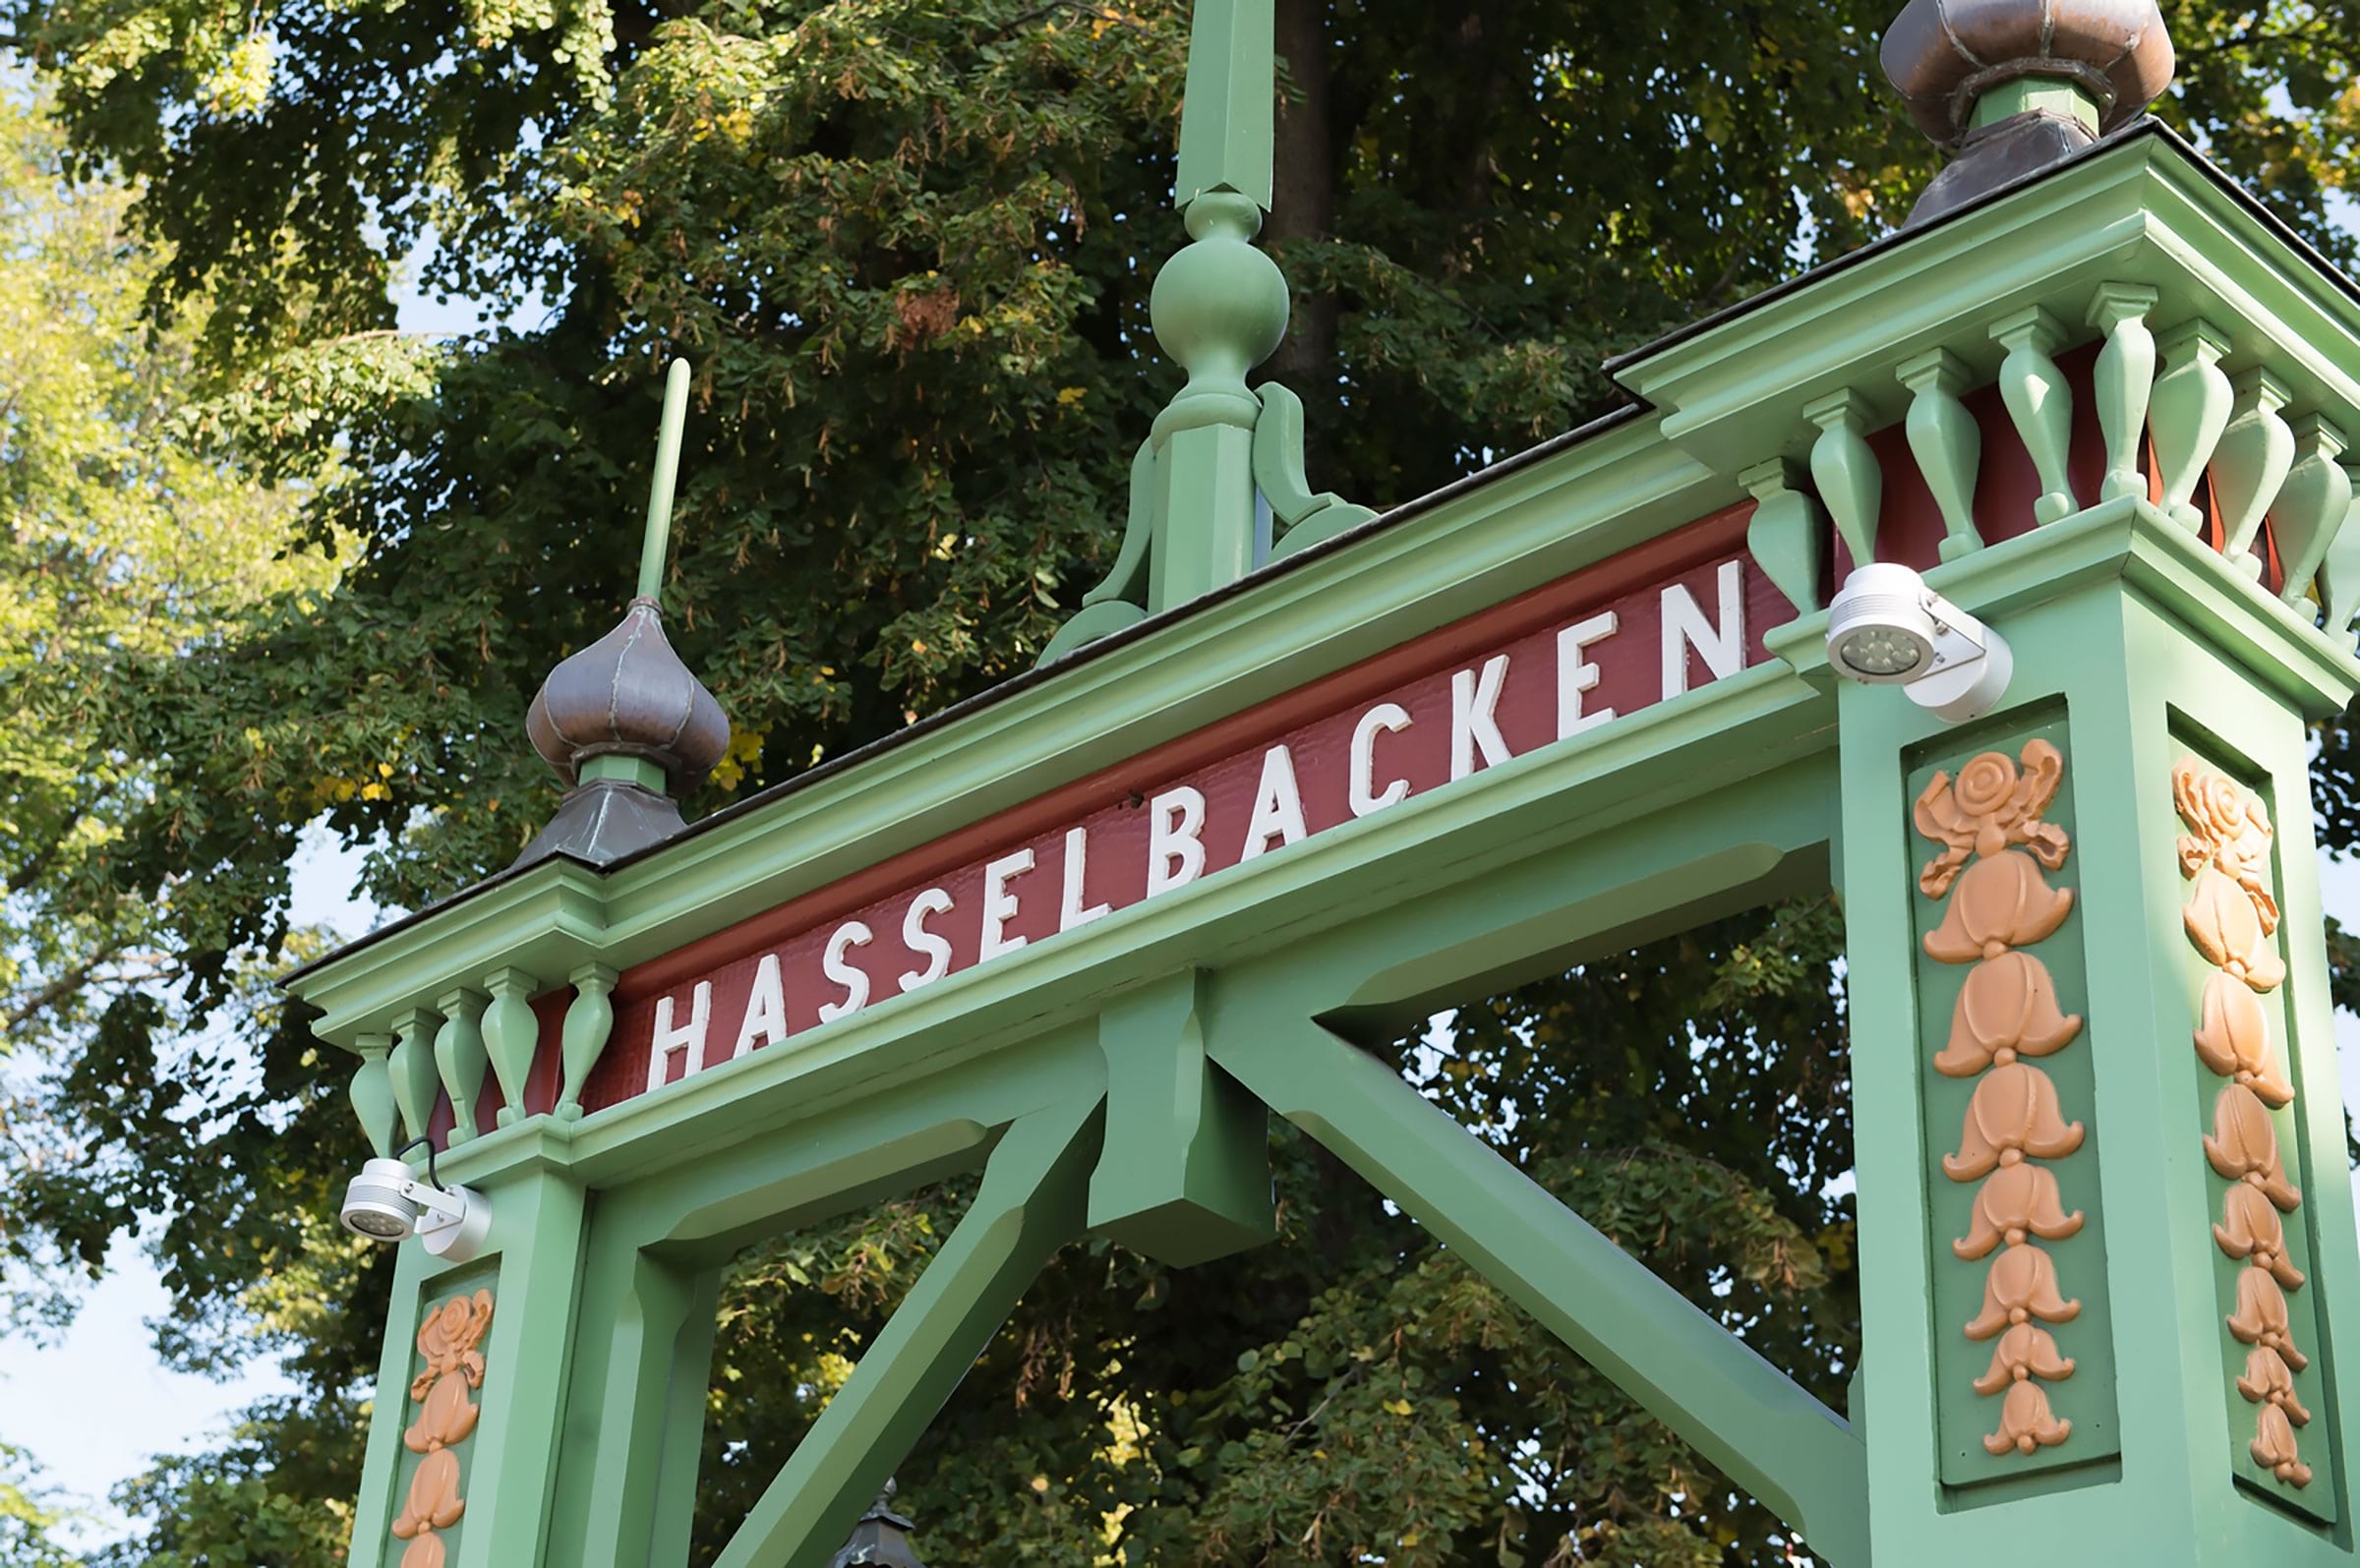 Foto: Hasselbacken